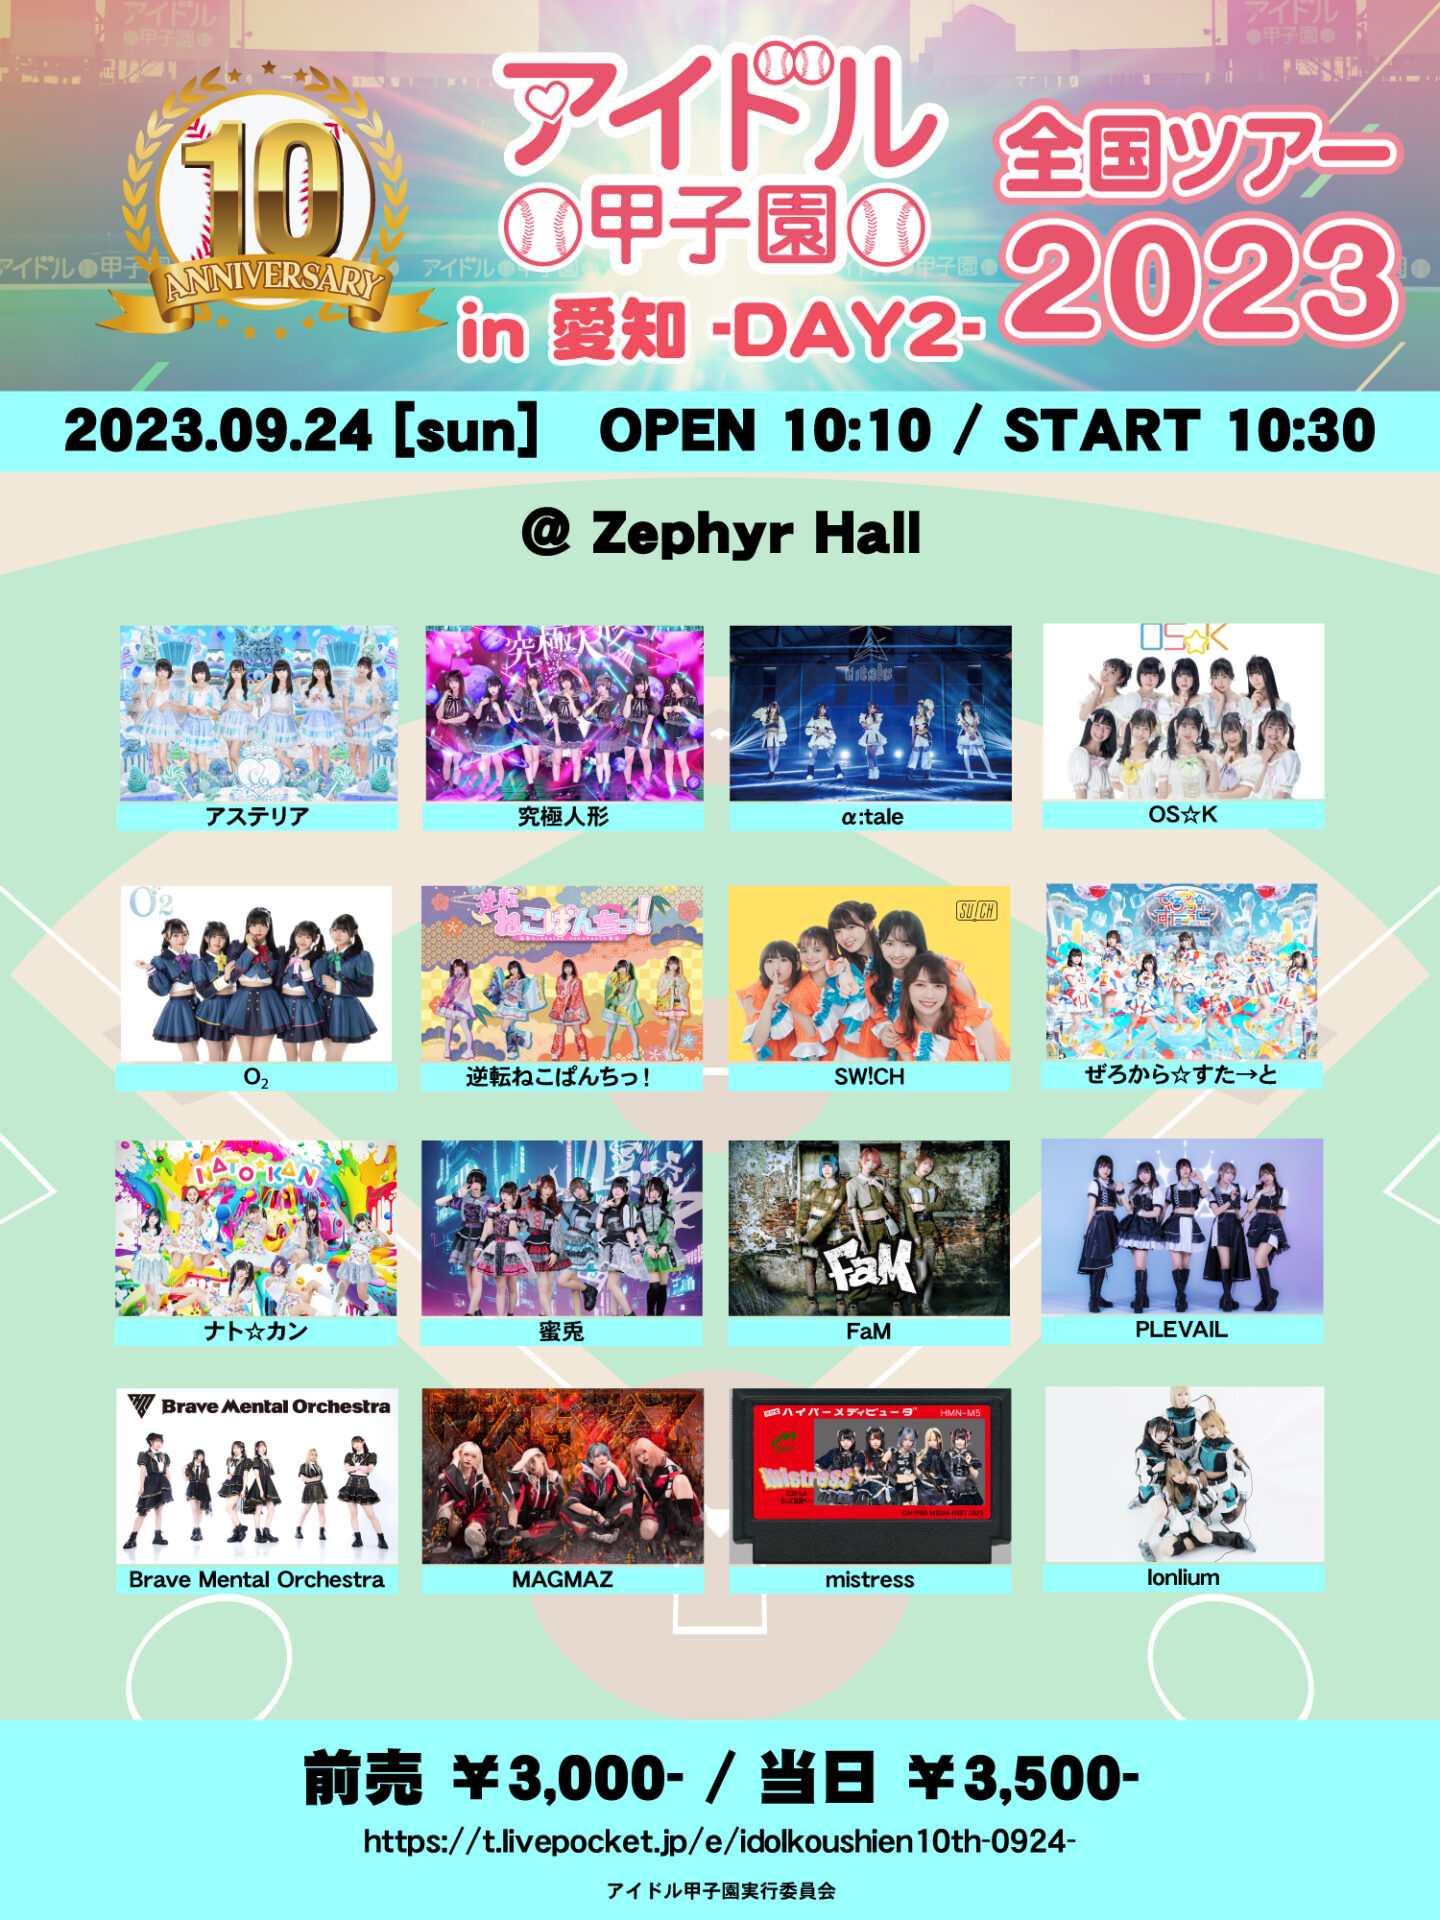 「アイドル甲子園 全国ツアー2023 in 愛知」-DAY2- @Zephyr Hall